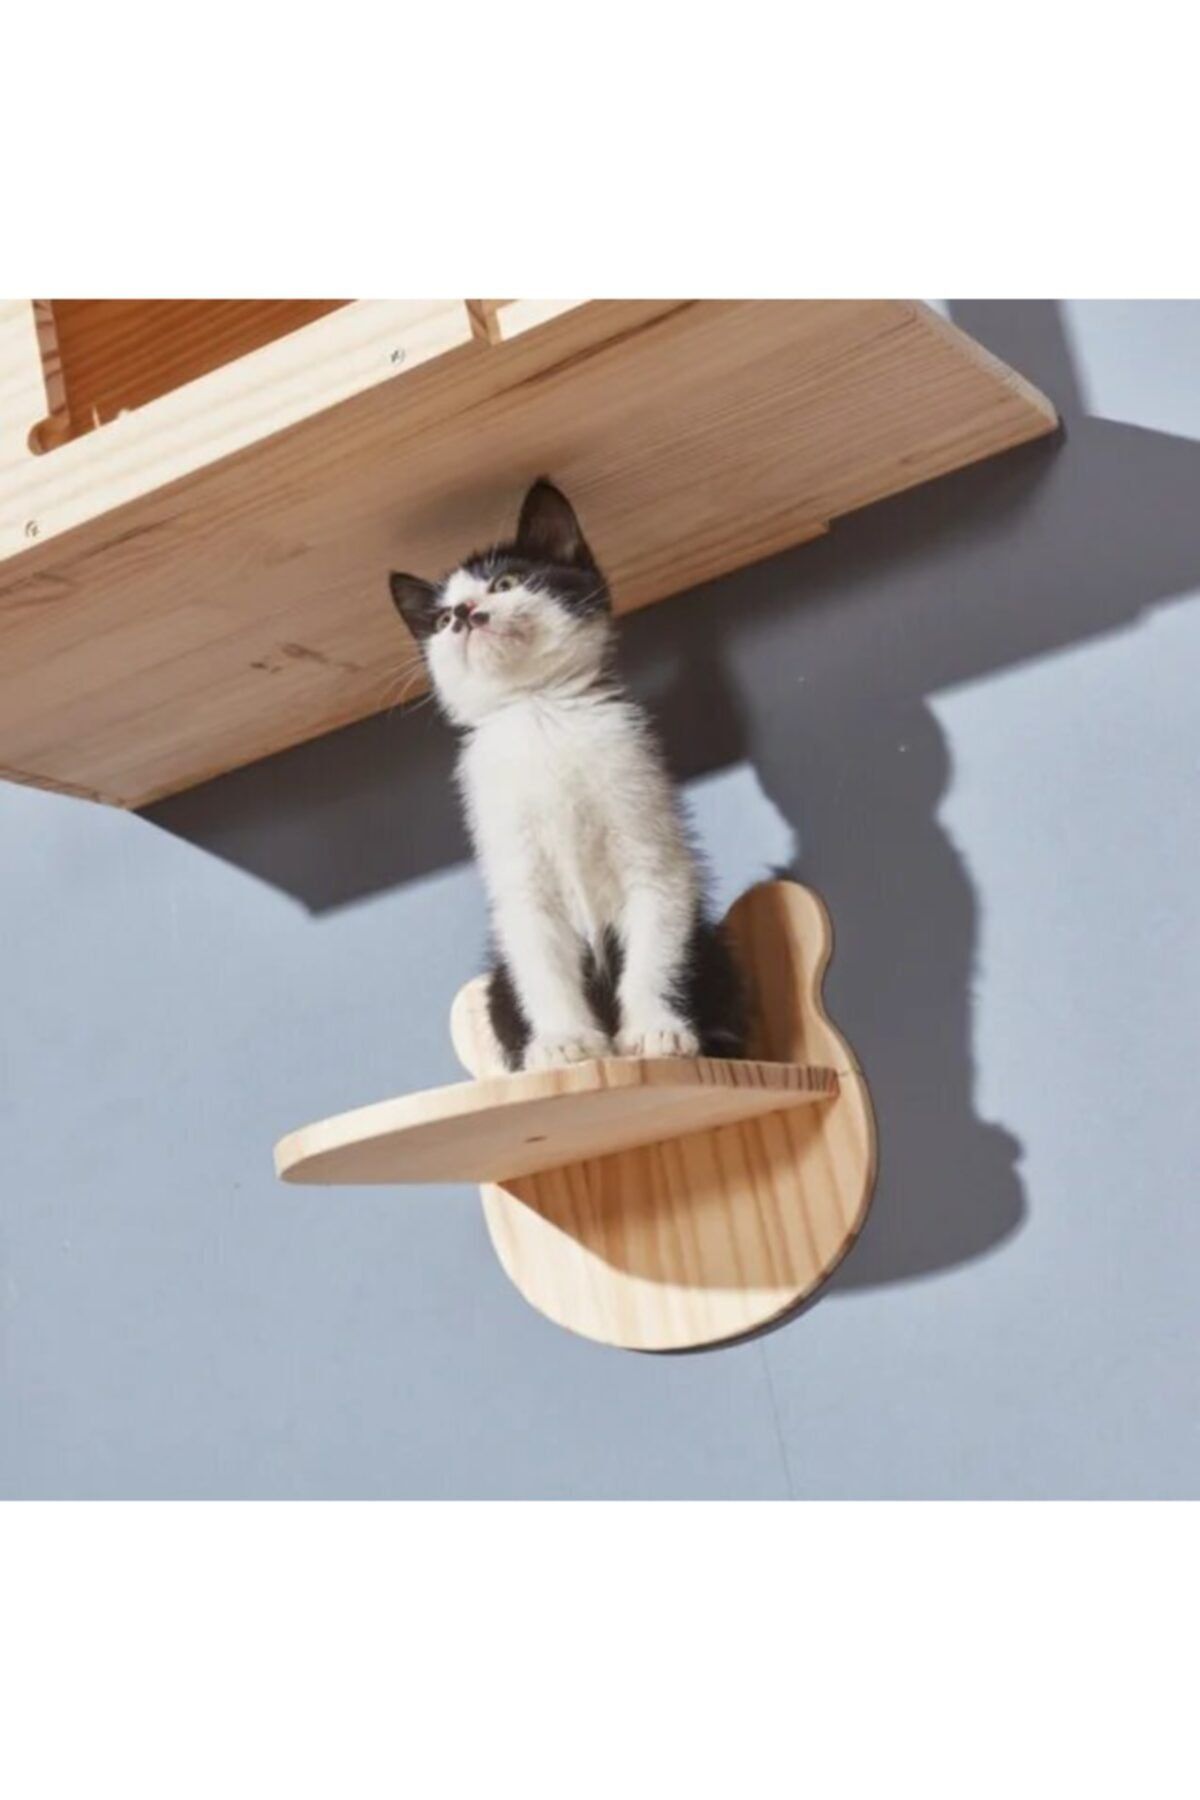 BUSHOP Kedi Balkonu - Kedi Atlama Platformu - Ahşap - Doğal Tasarım - Panda